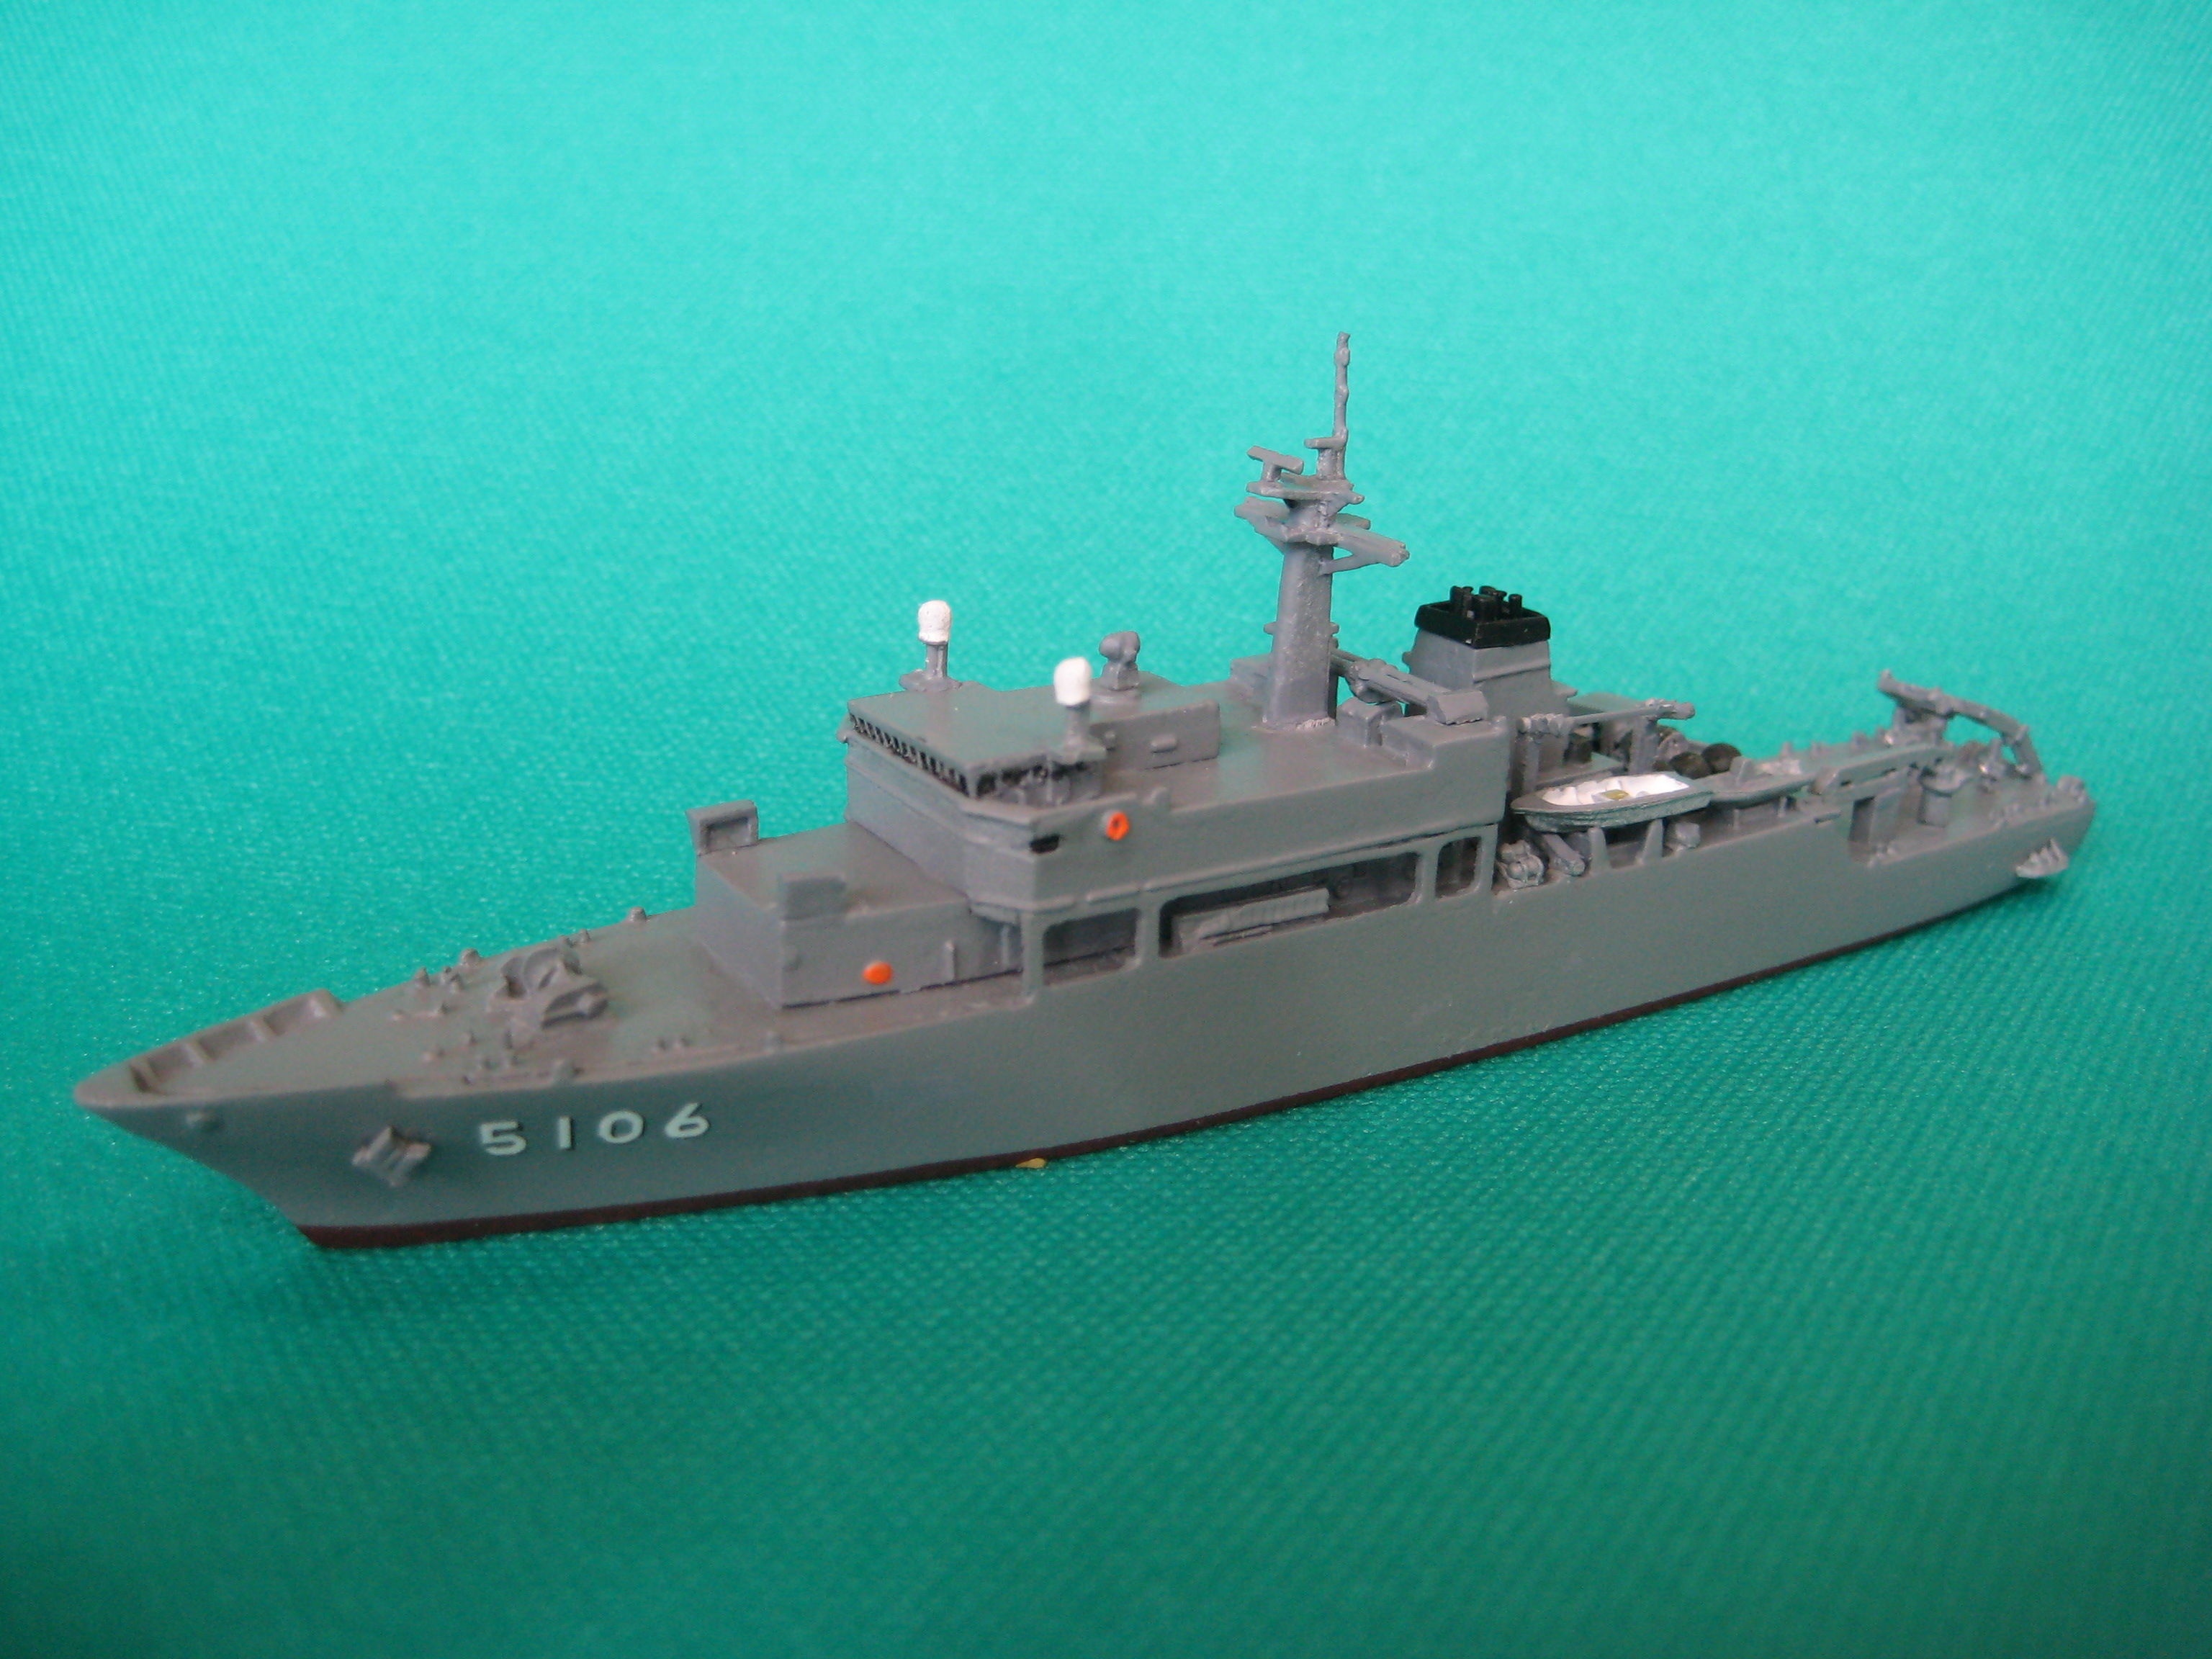 シーラインシリーズ新製品 海上自衛隊 海洋観測艦 しょうなん入荷しました。